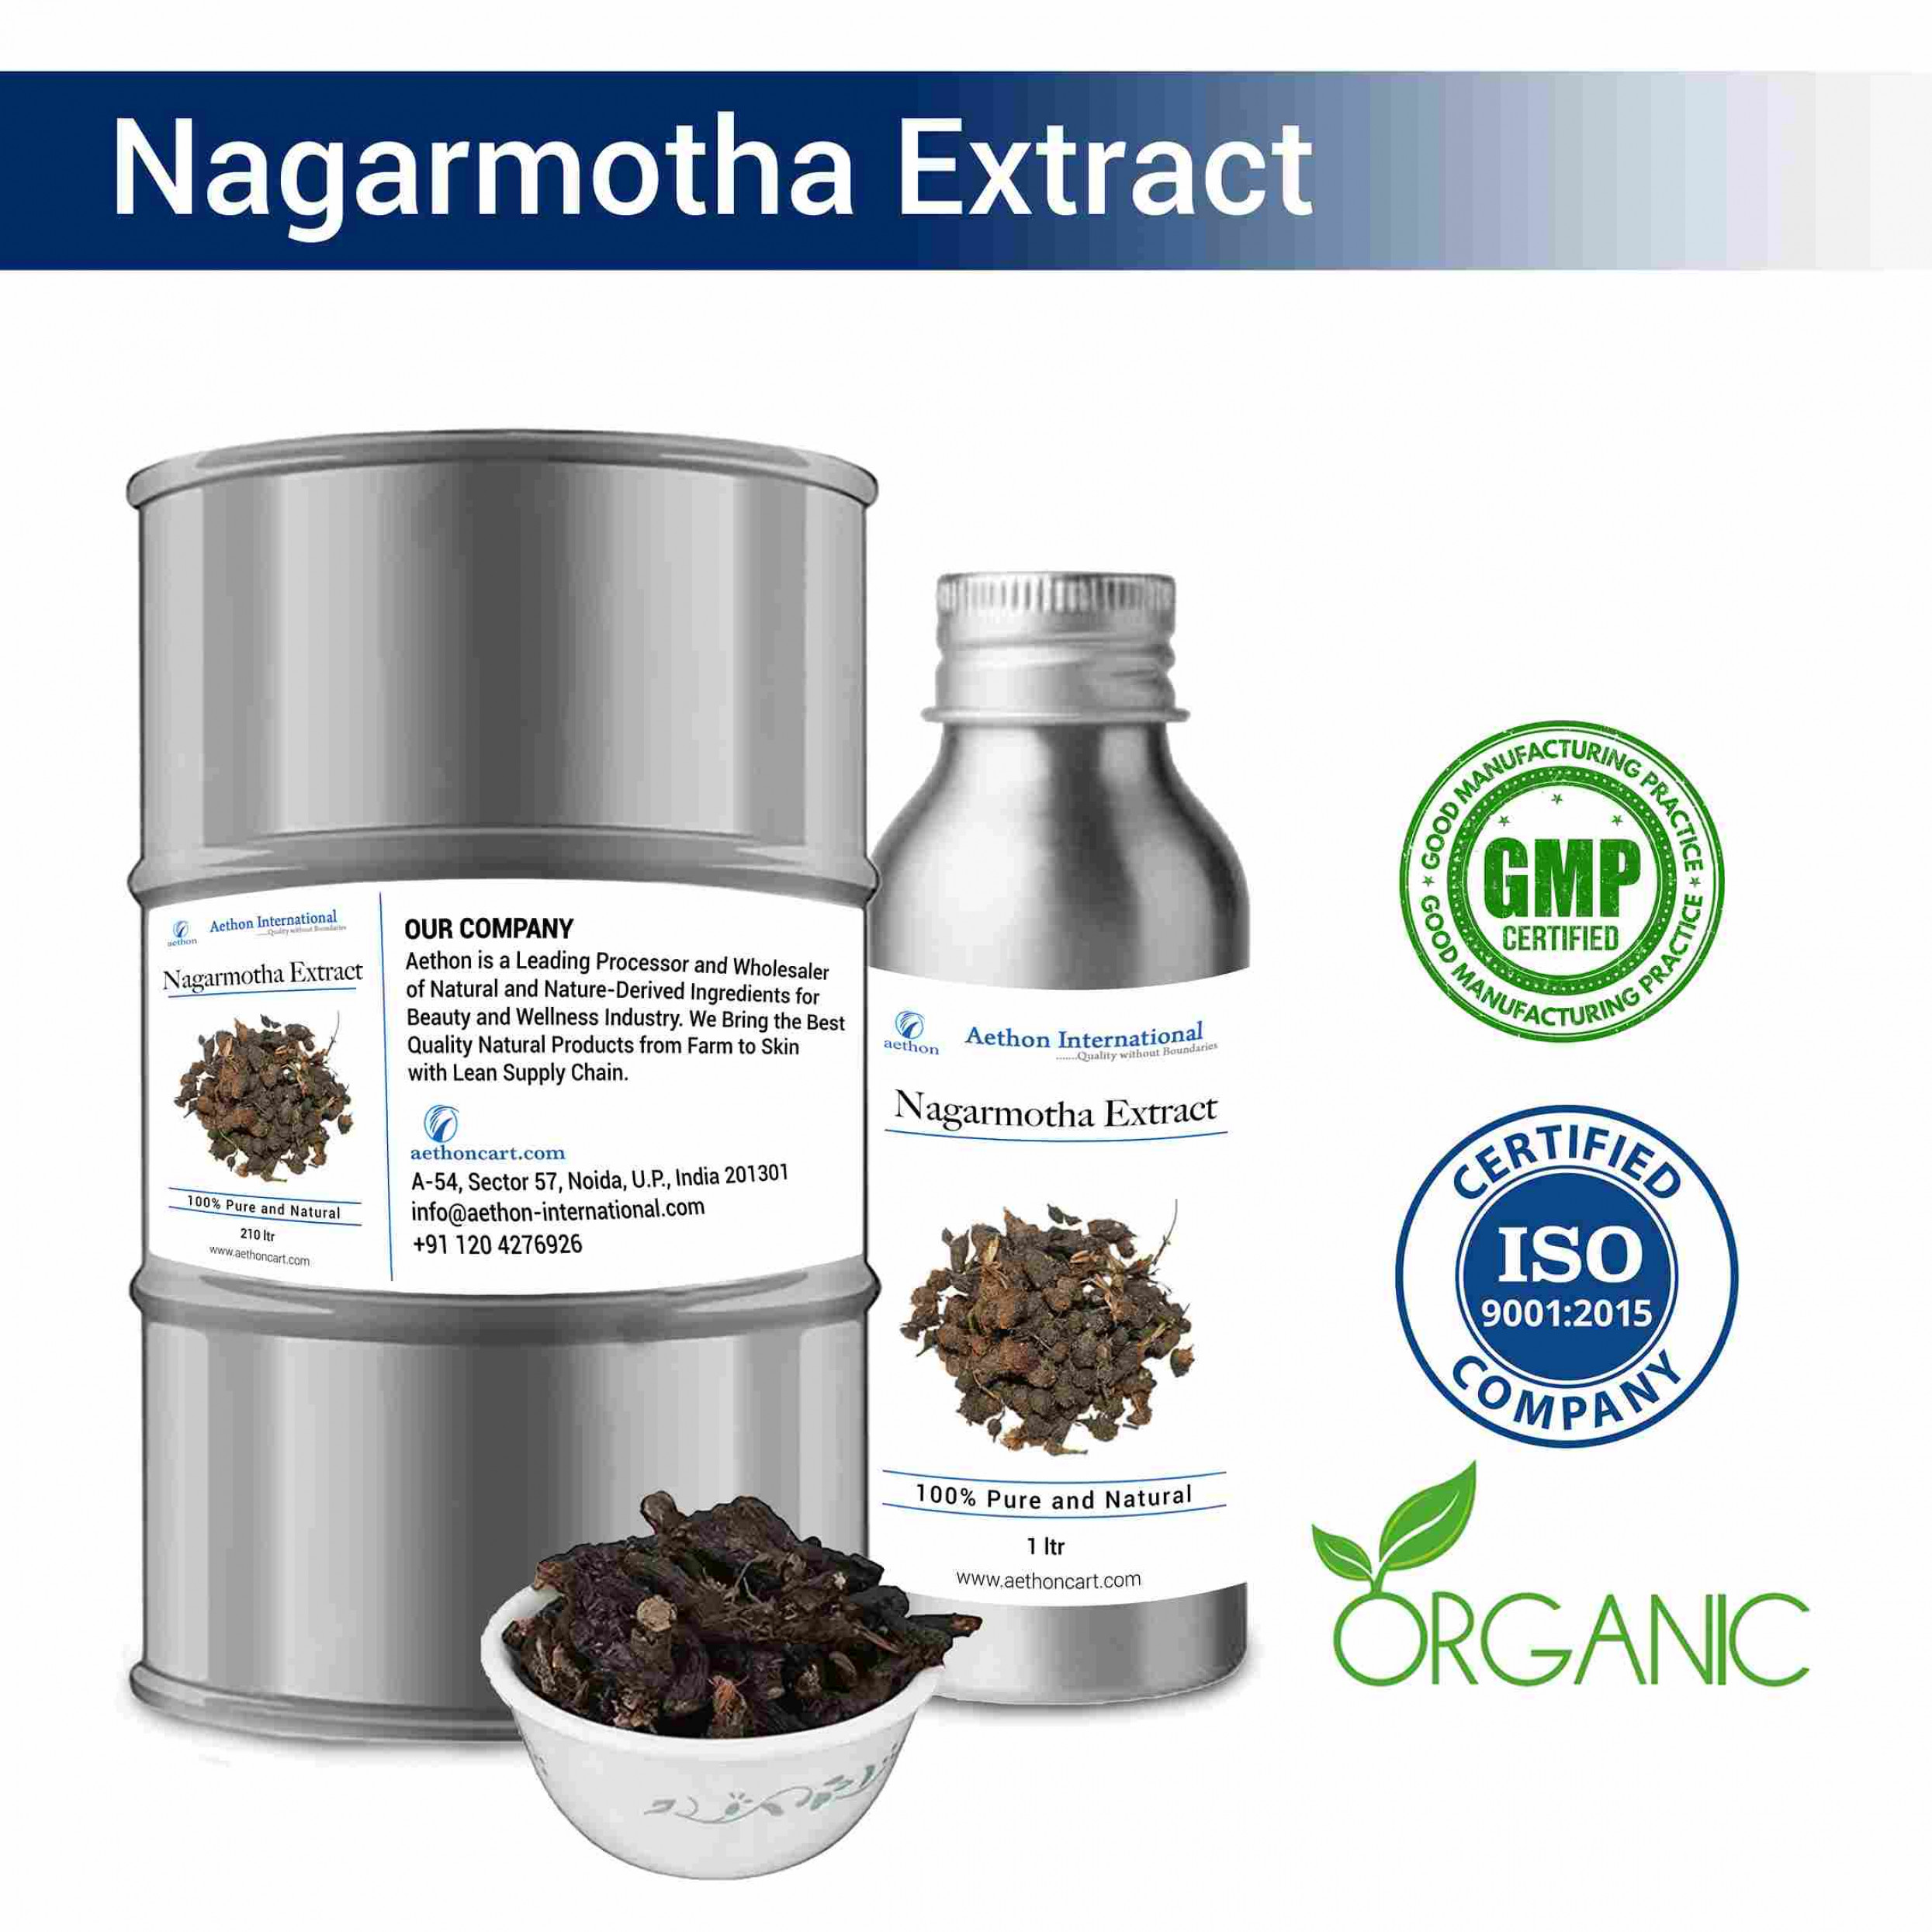 Nagarmotha Extract